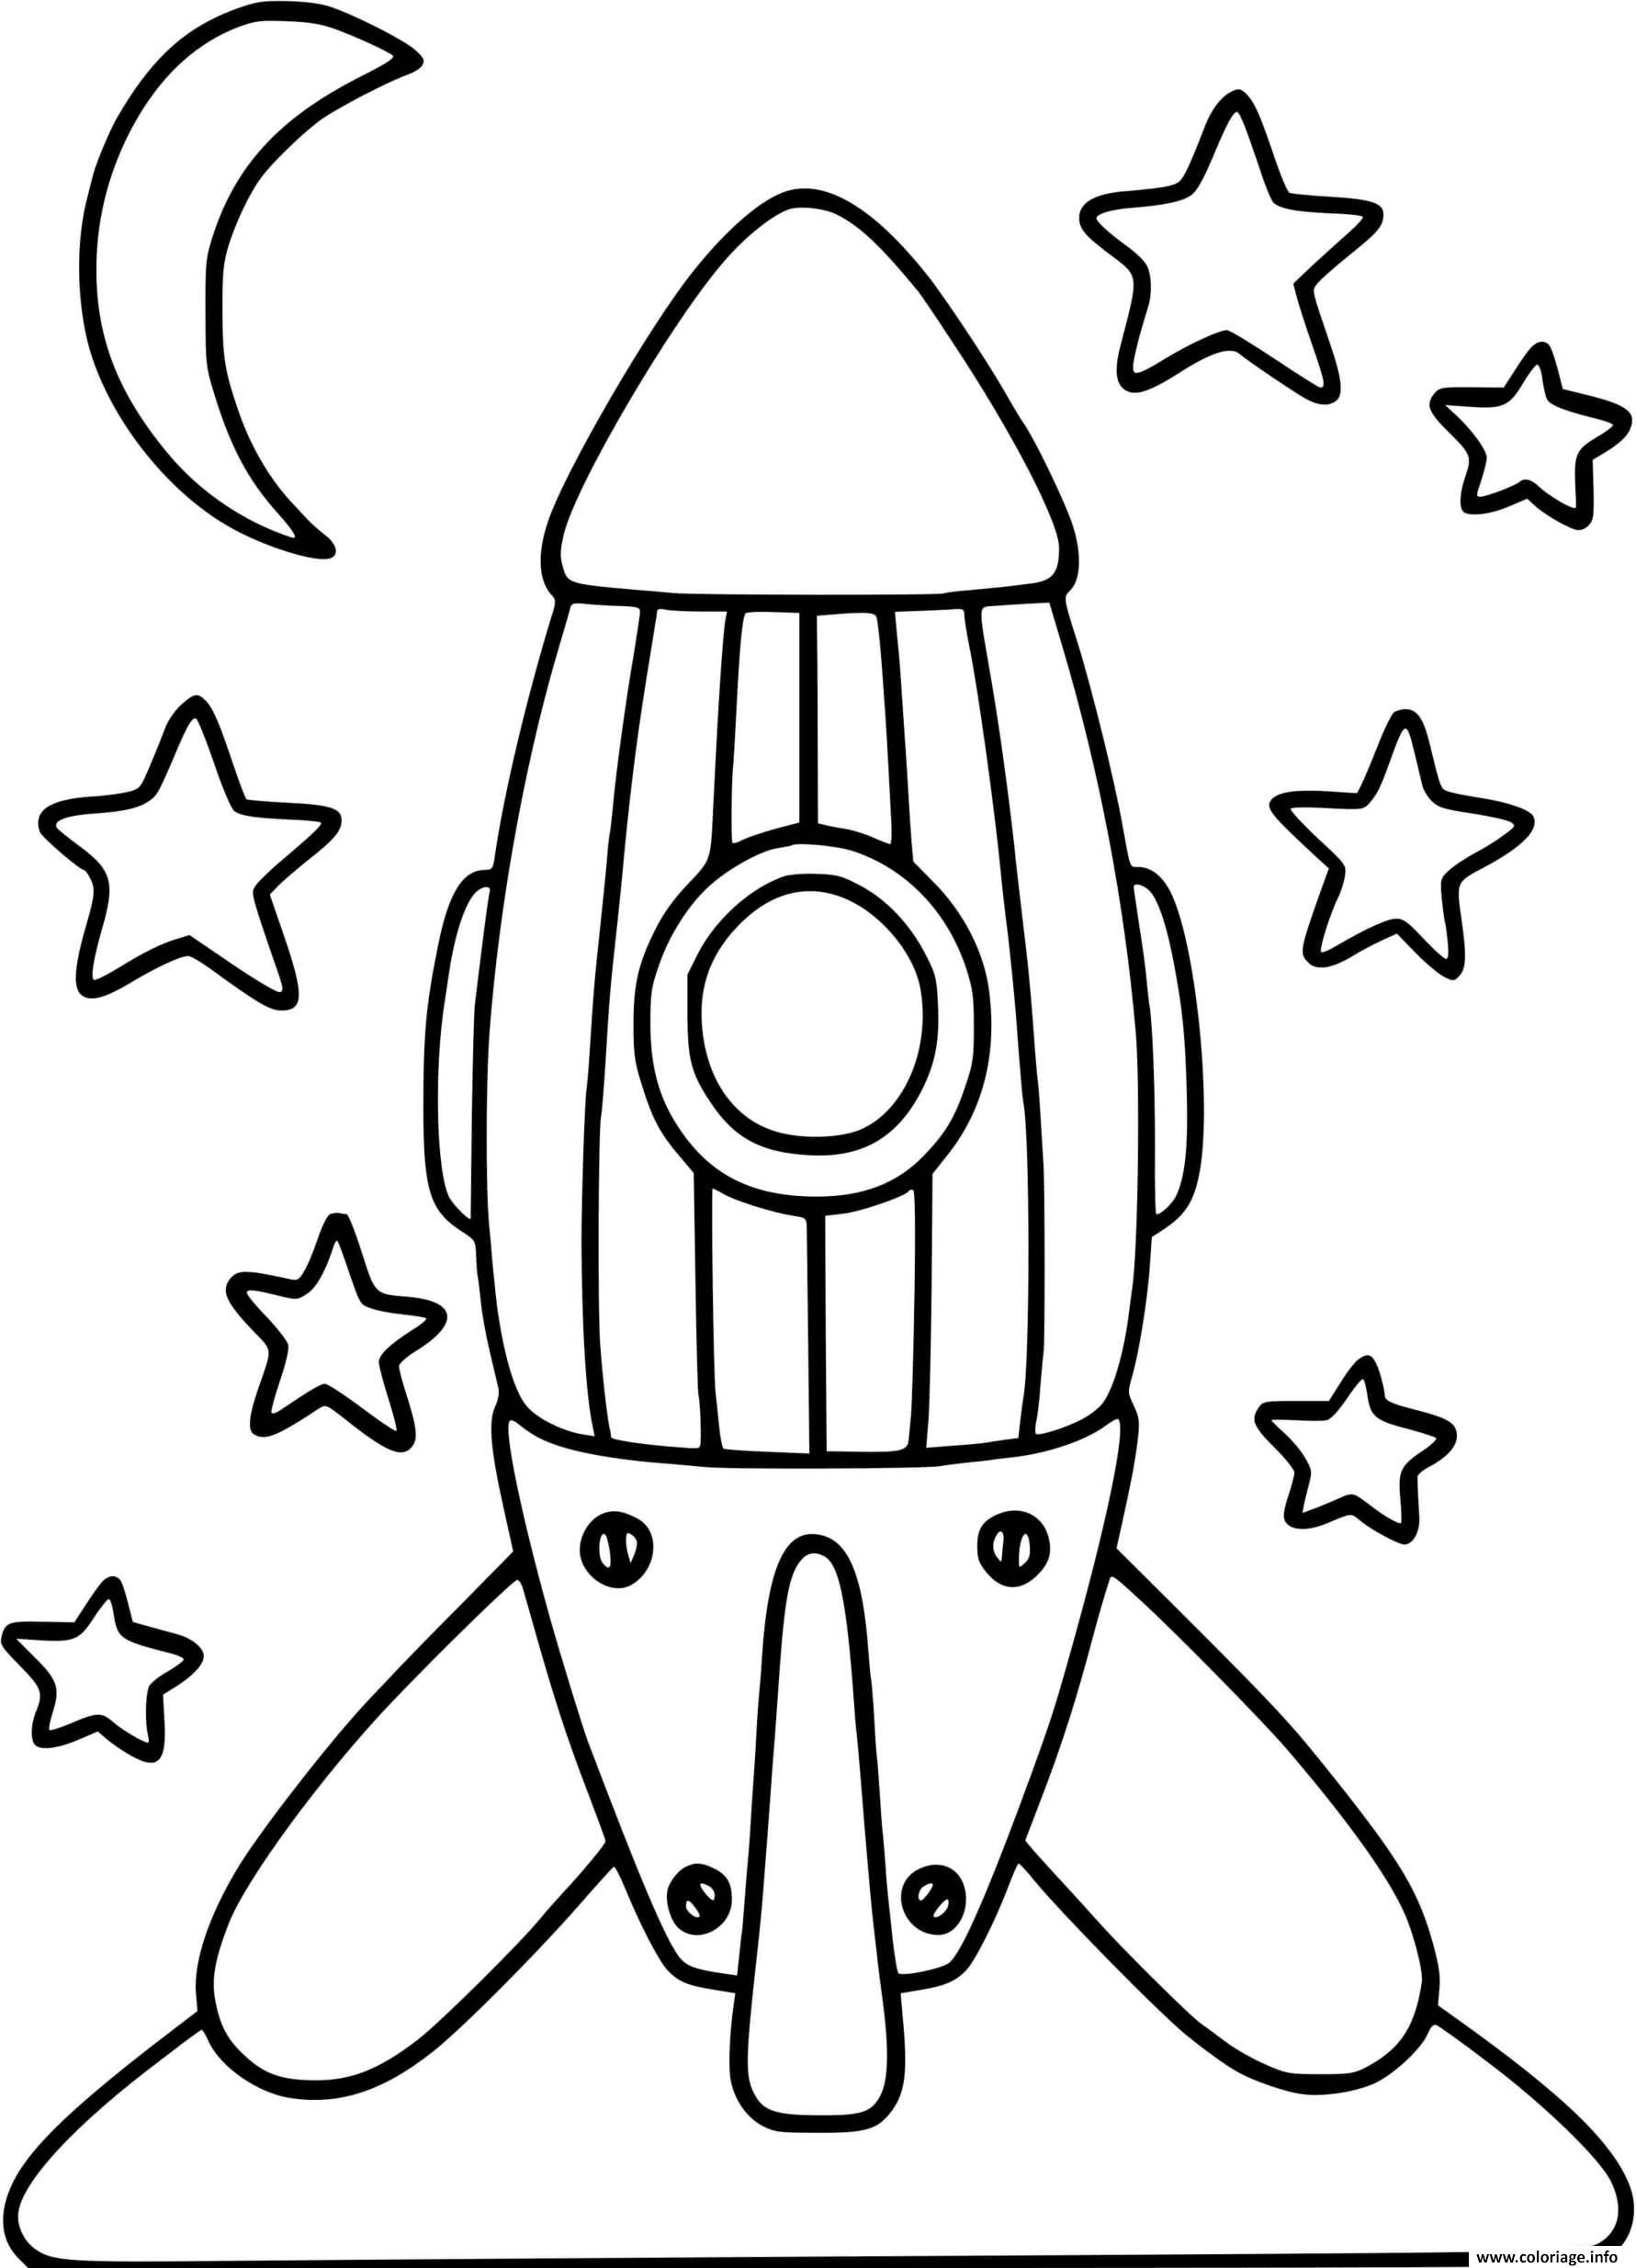 Раскраски к дню космонавтики для детей распечатать. Ракета раскраска. Ракета раскраска для детей. Космическая ракета раскраска. Раскраска ракета в космосе для детей.